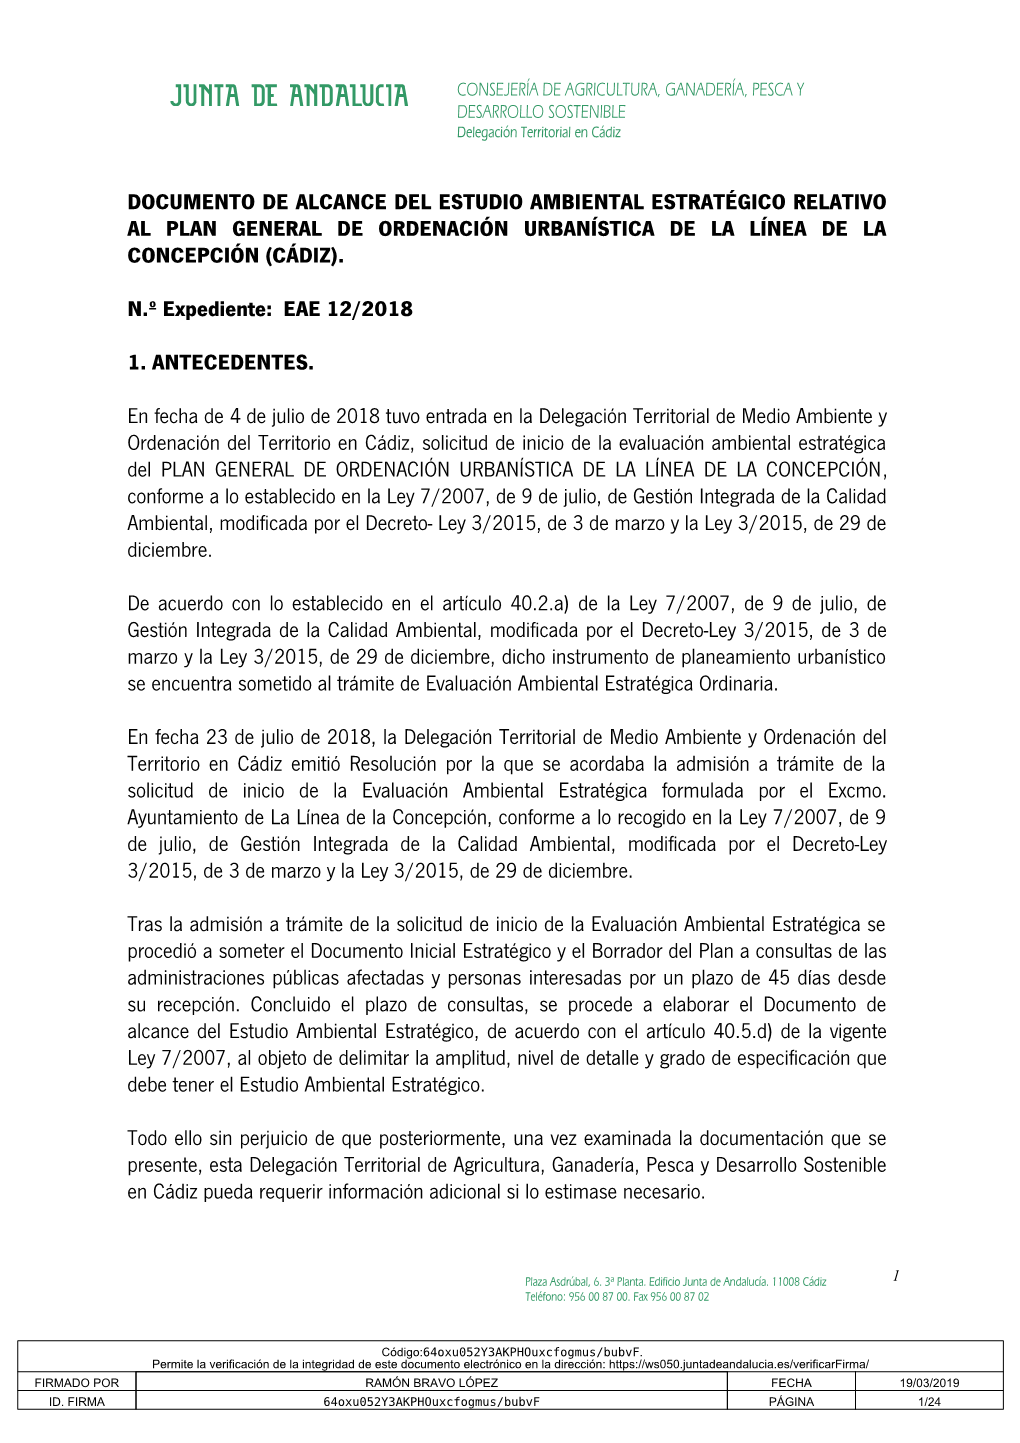 Documento De Alcance Del Estudio Ambiental Estratégico Relativo Al Plan General De Ordenación Urbanística De La Línea De La Concepción (Cádiz)